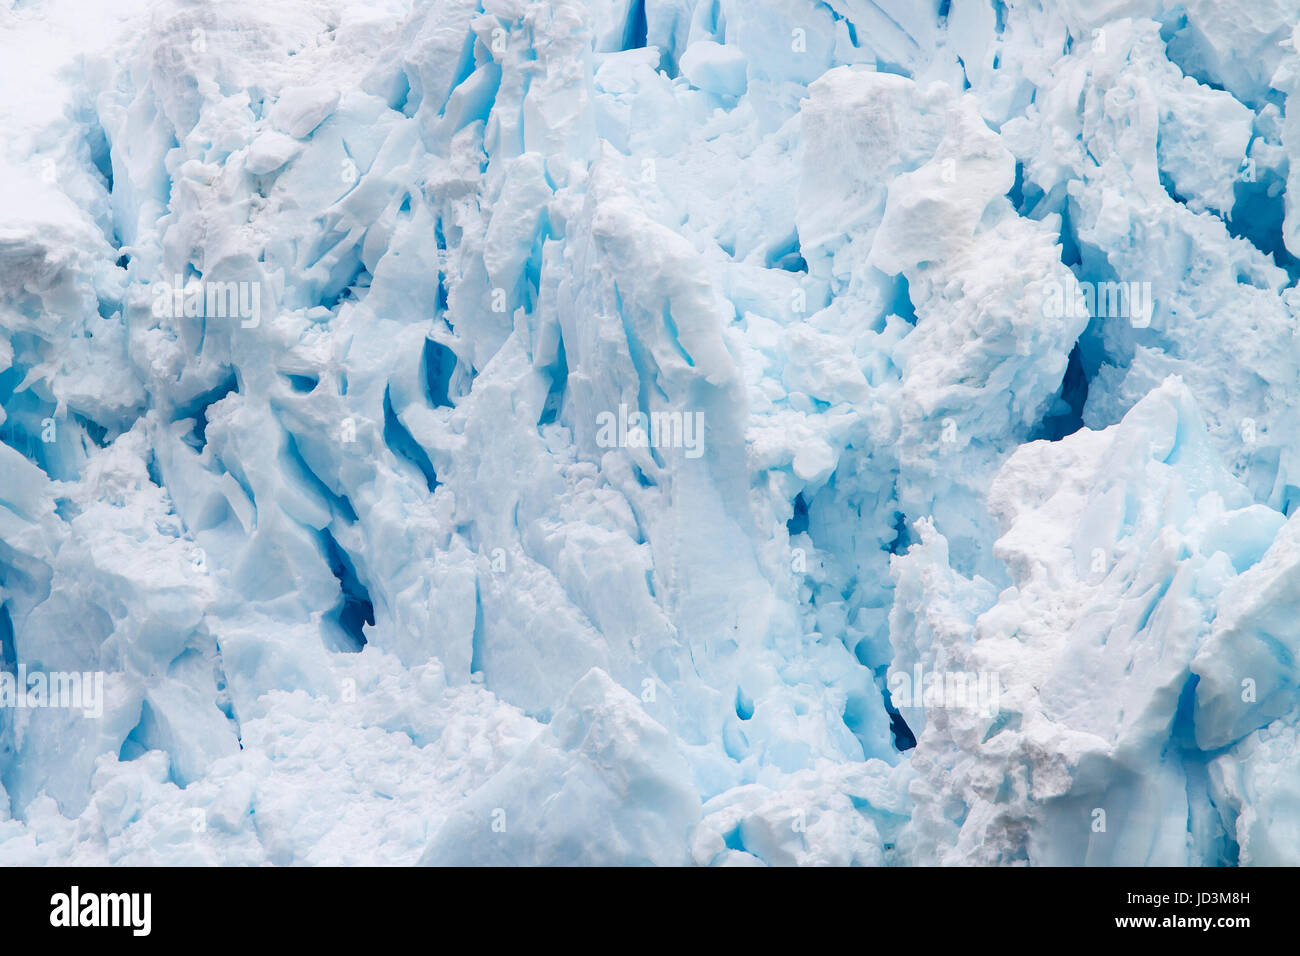 Antarctica landscape with blue ice iceberg, ice berg, icebergs. Stock Photo